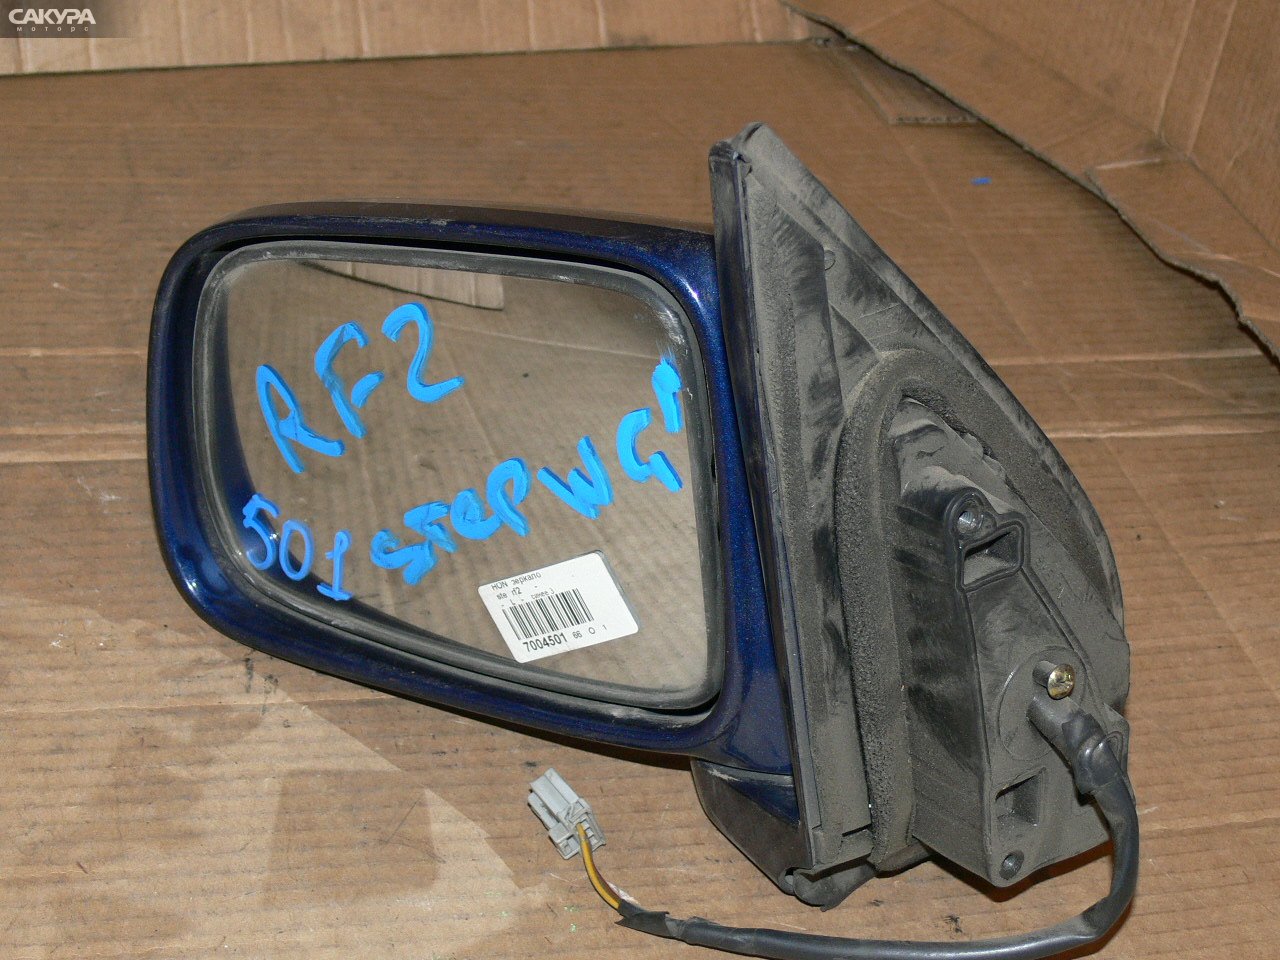 Зеркало боковое левое Honda Stepwgn RF2: купить в Сакура Иркутск.